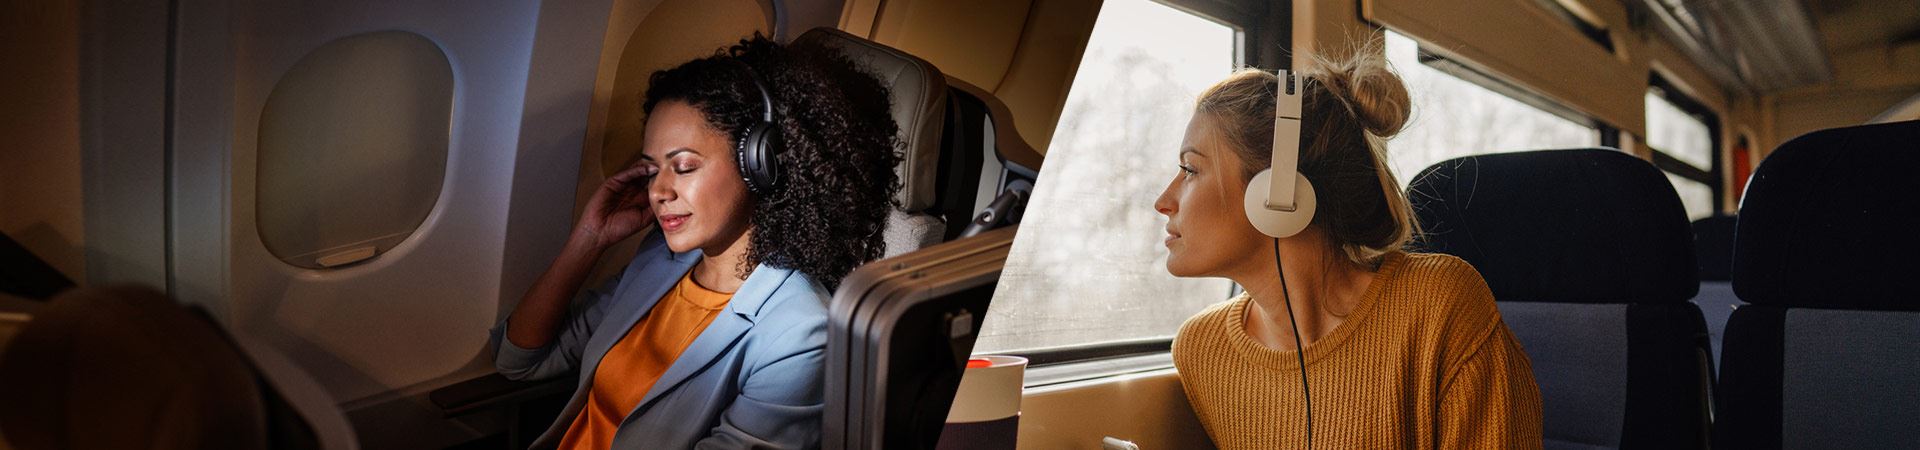 A la izquierda, una fotografía de una mujer sentada cómodamente dentro de un avión. A la derecha, una fotografía de otra mujer sentada dentro de un tren, mirando por la ventanilla. Ambas usan auriculares. El ambiente en el avión y en el tren es tranquilo y no se ven otras personas. 